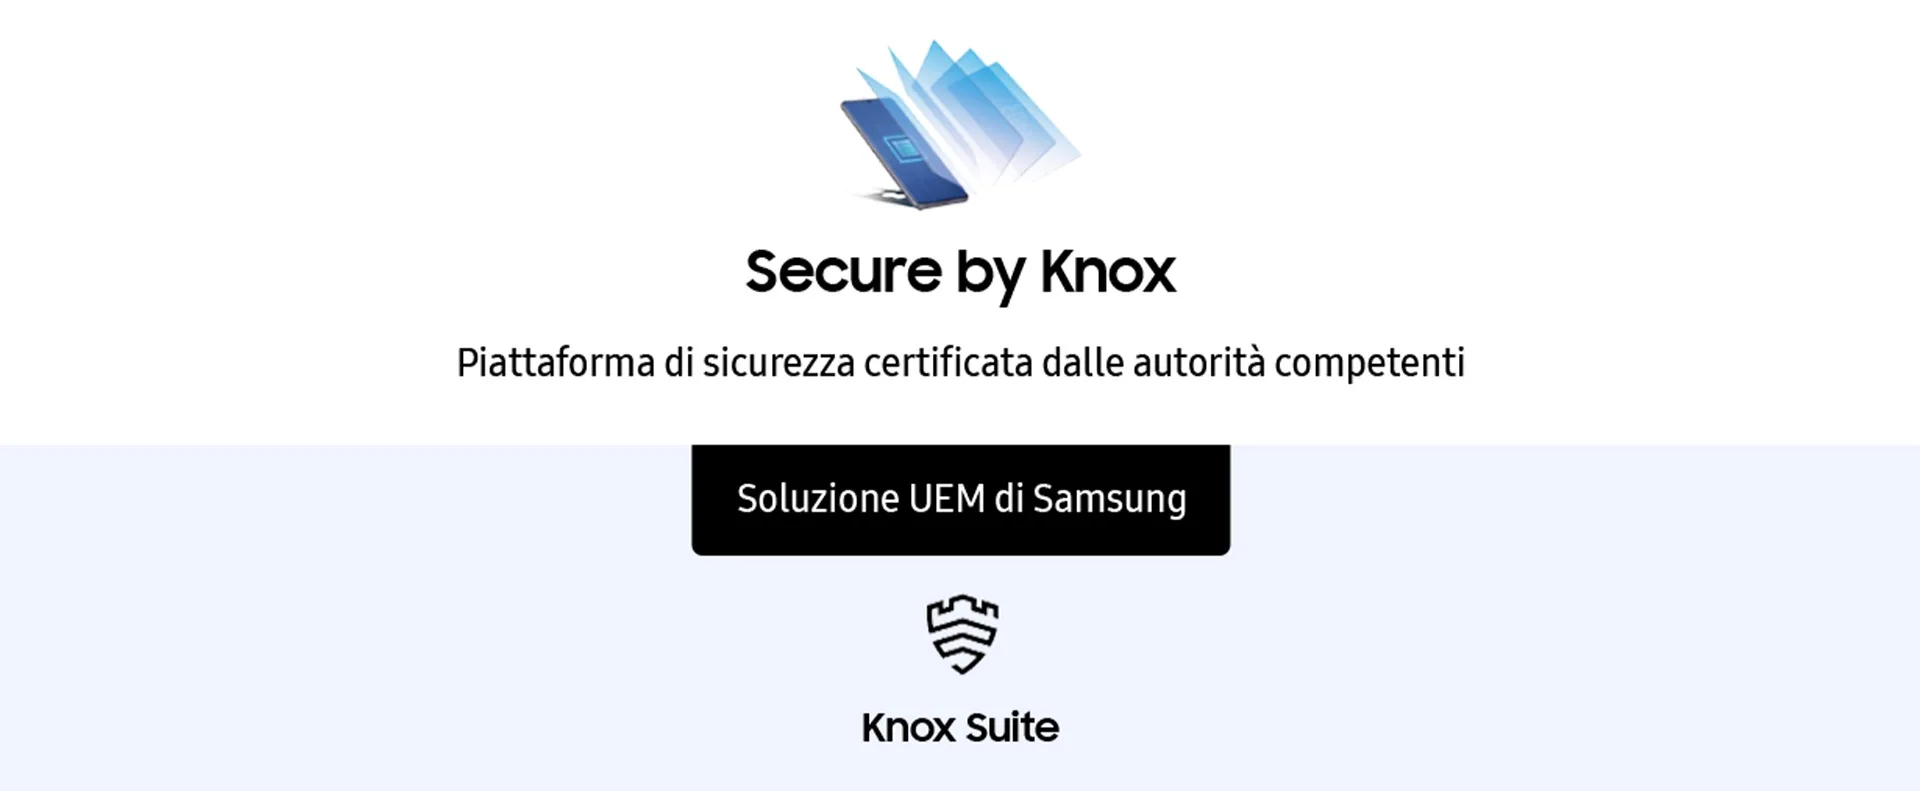 il portfolio di samsung knox / Samsung Galaxy Business [senza fine]